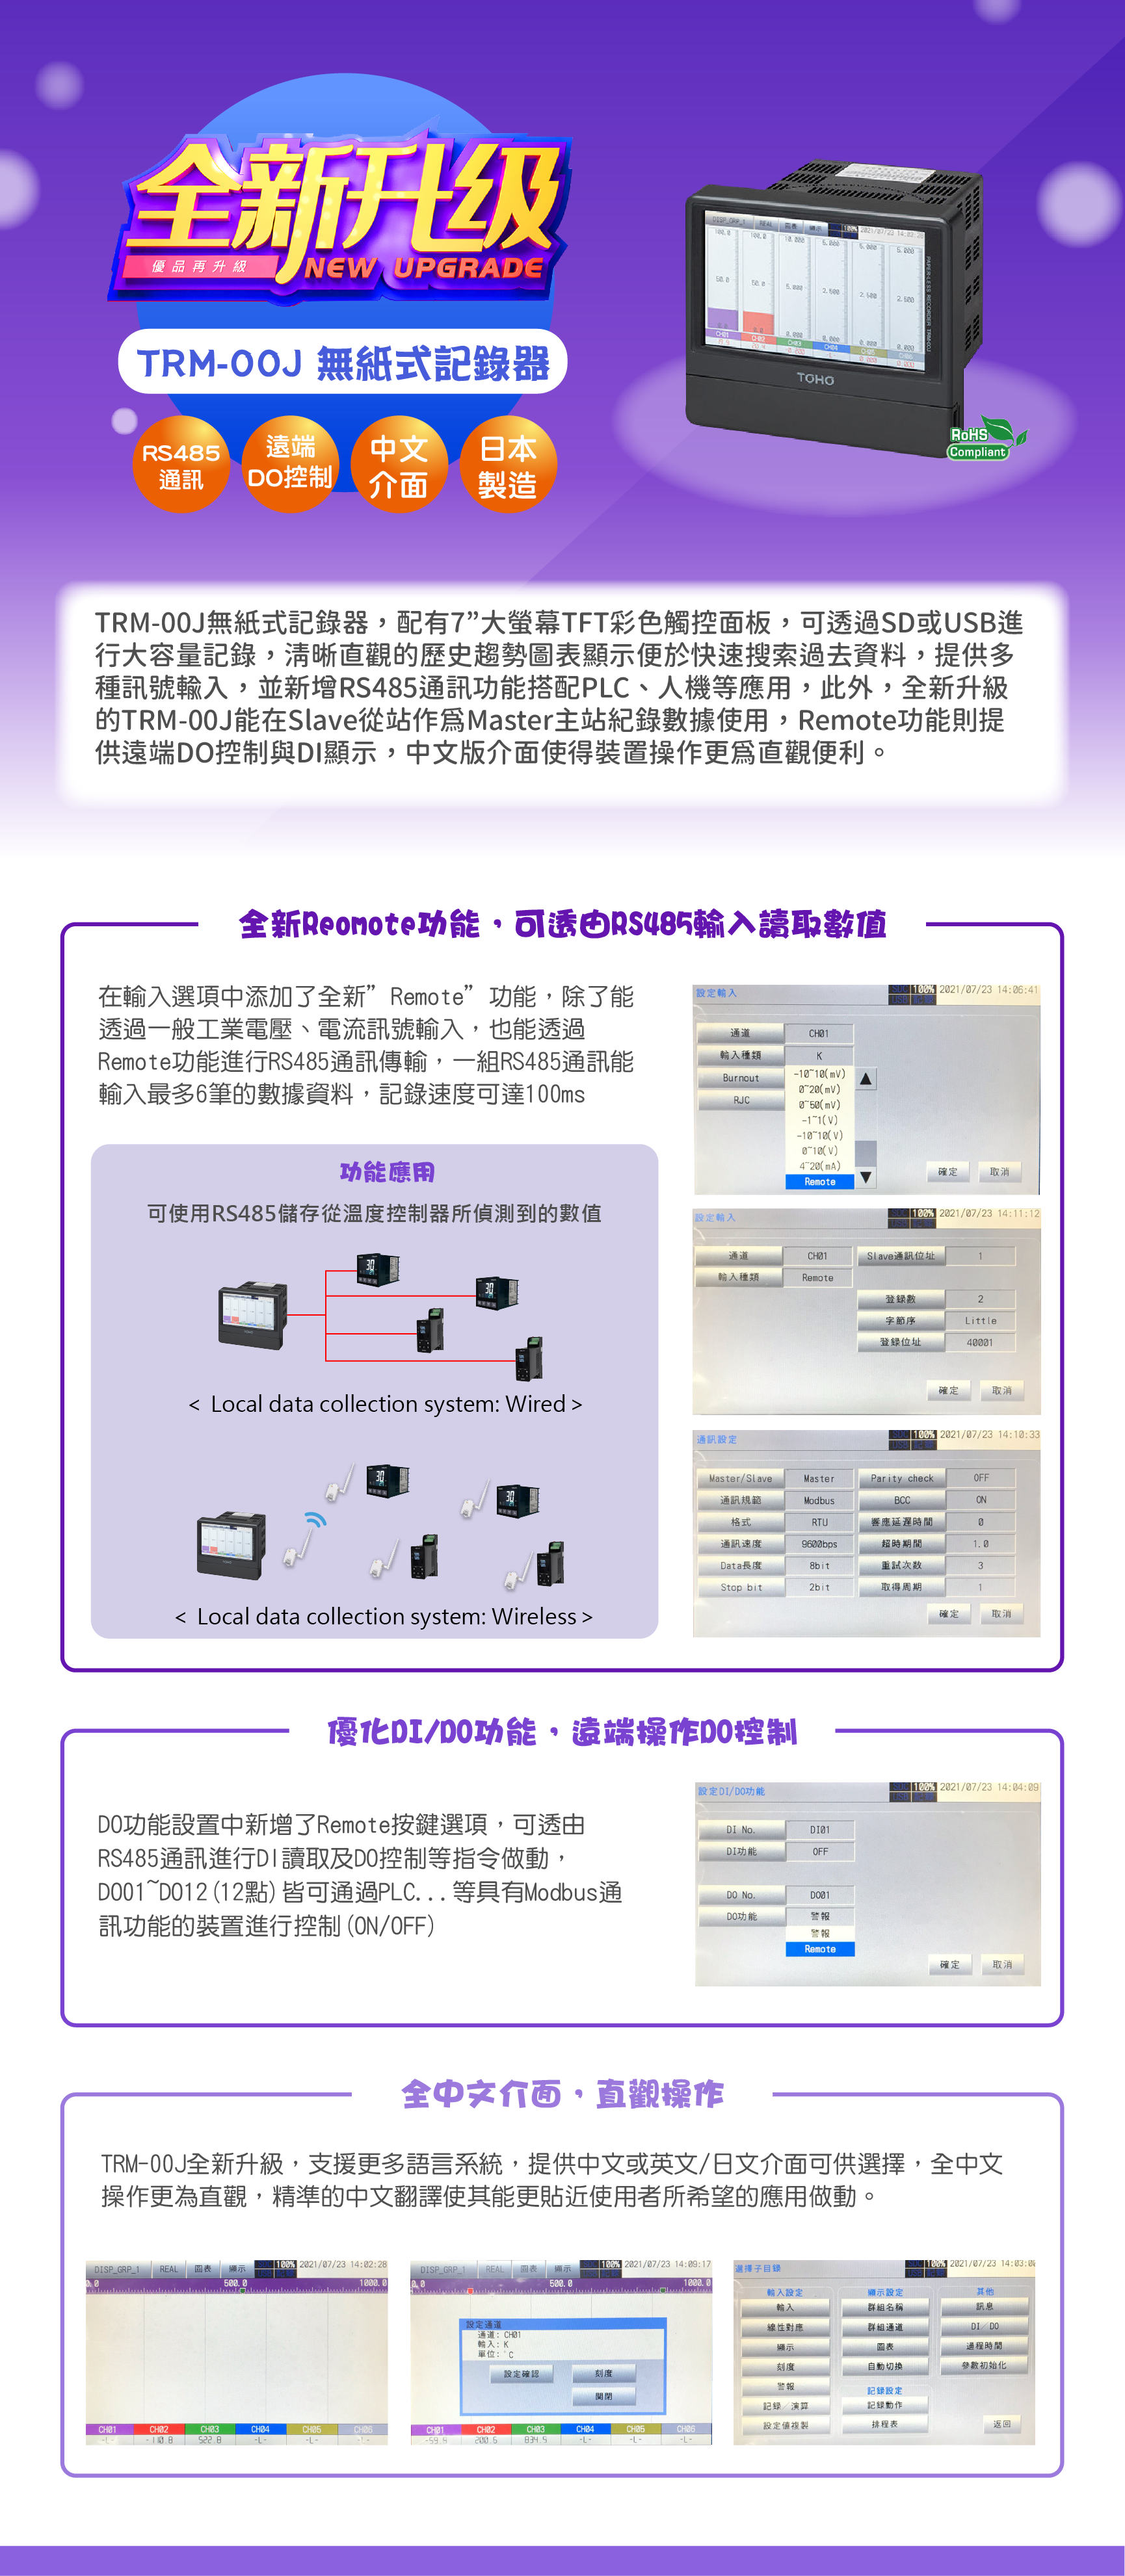 全新升級日本製造無紙記錄器TRM-00J，特色功能，全面升級，RS485通訊，遠端控制功能，市場最高CP值，歡迎洽詢久德電子!